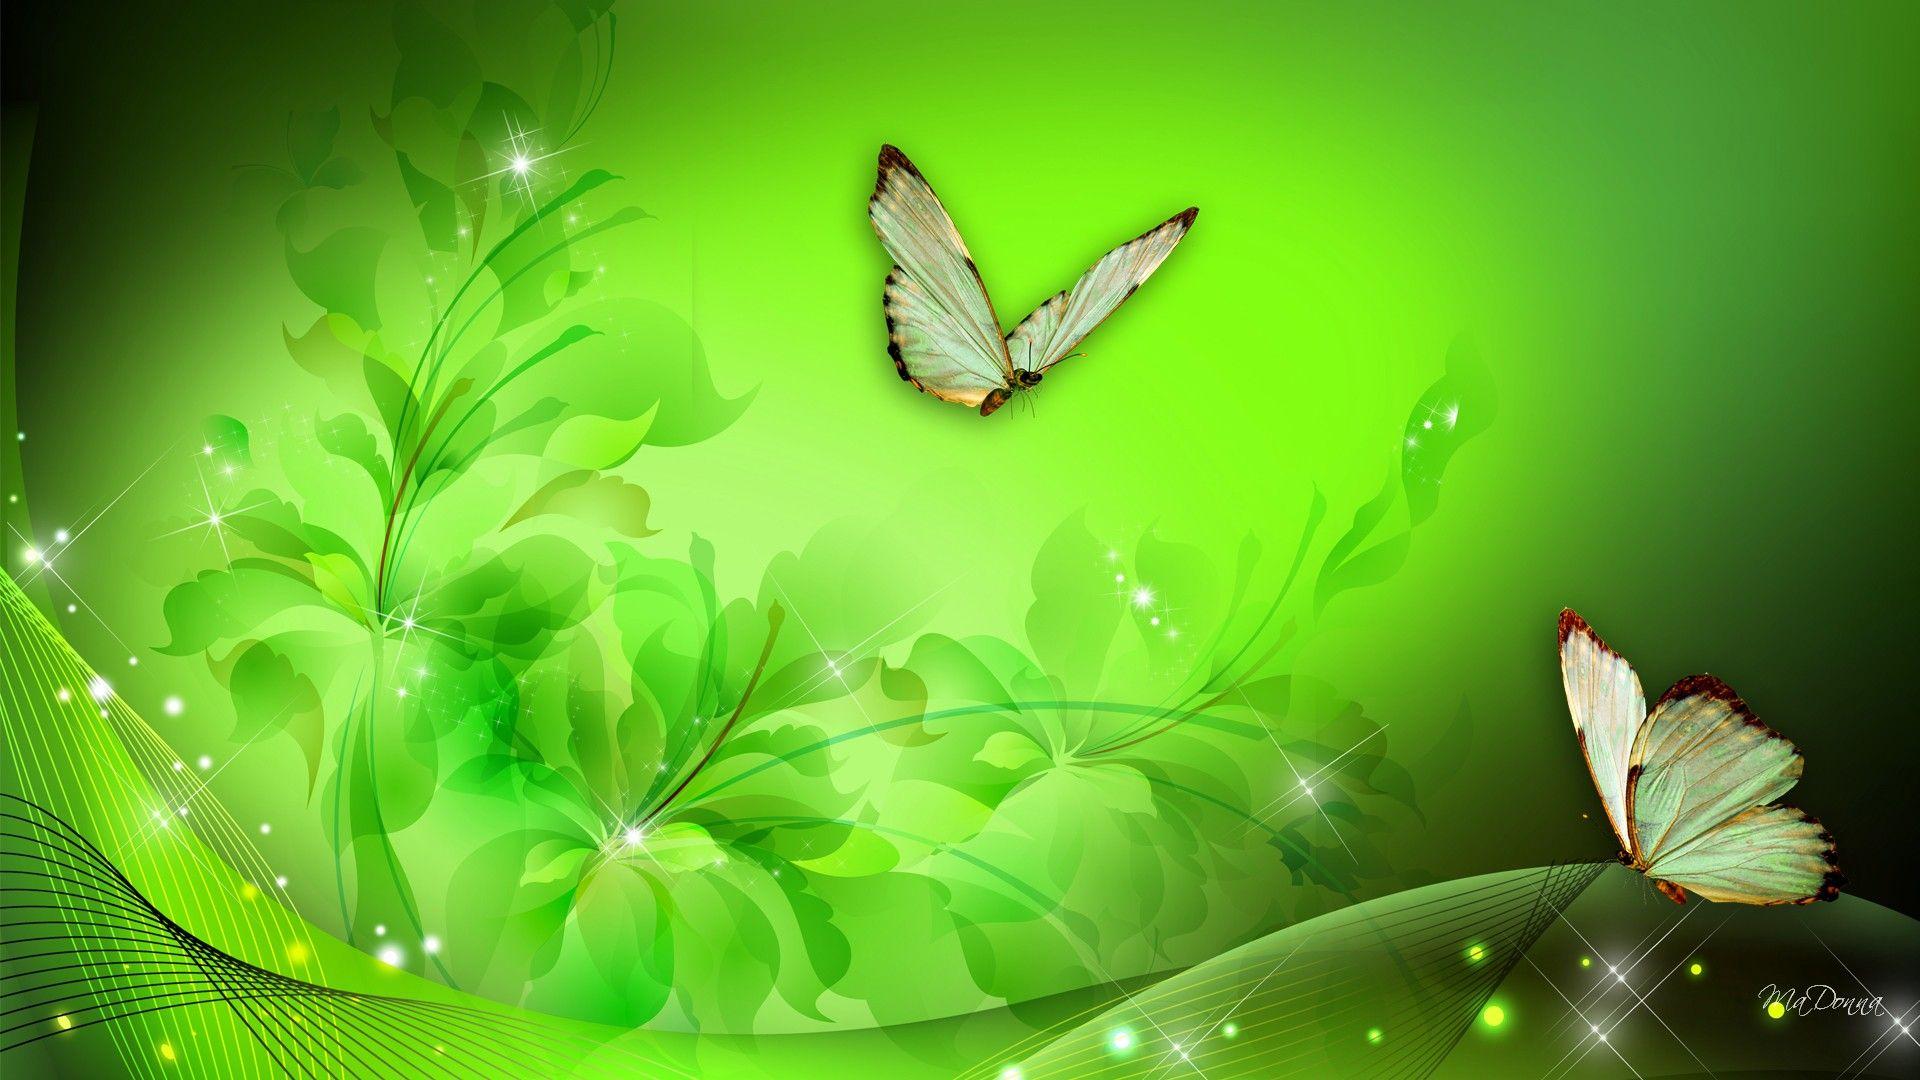 Greenfantasy art. HD Green Floral Fantasy Wallpaper